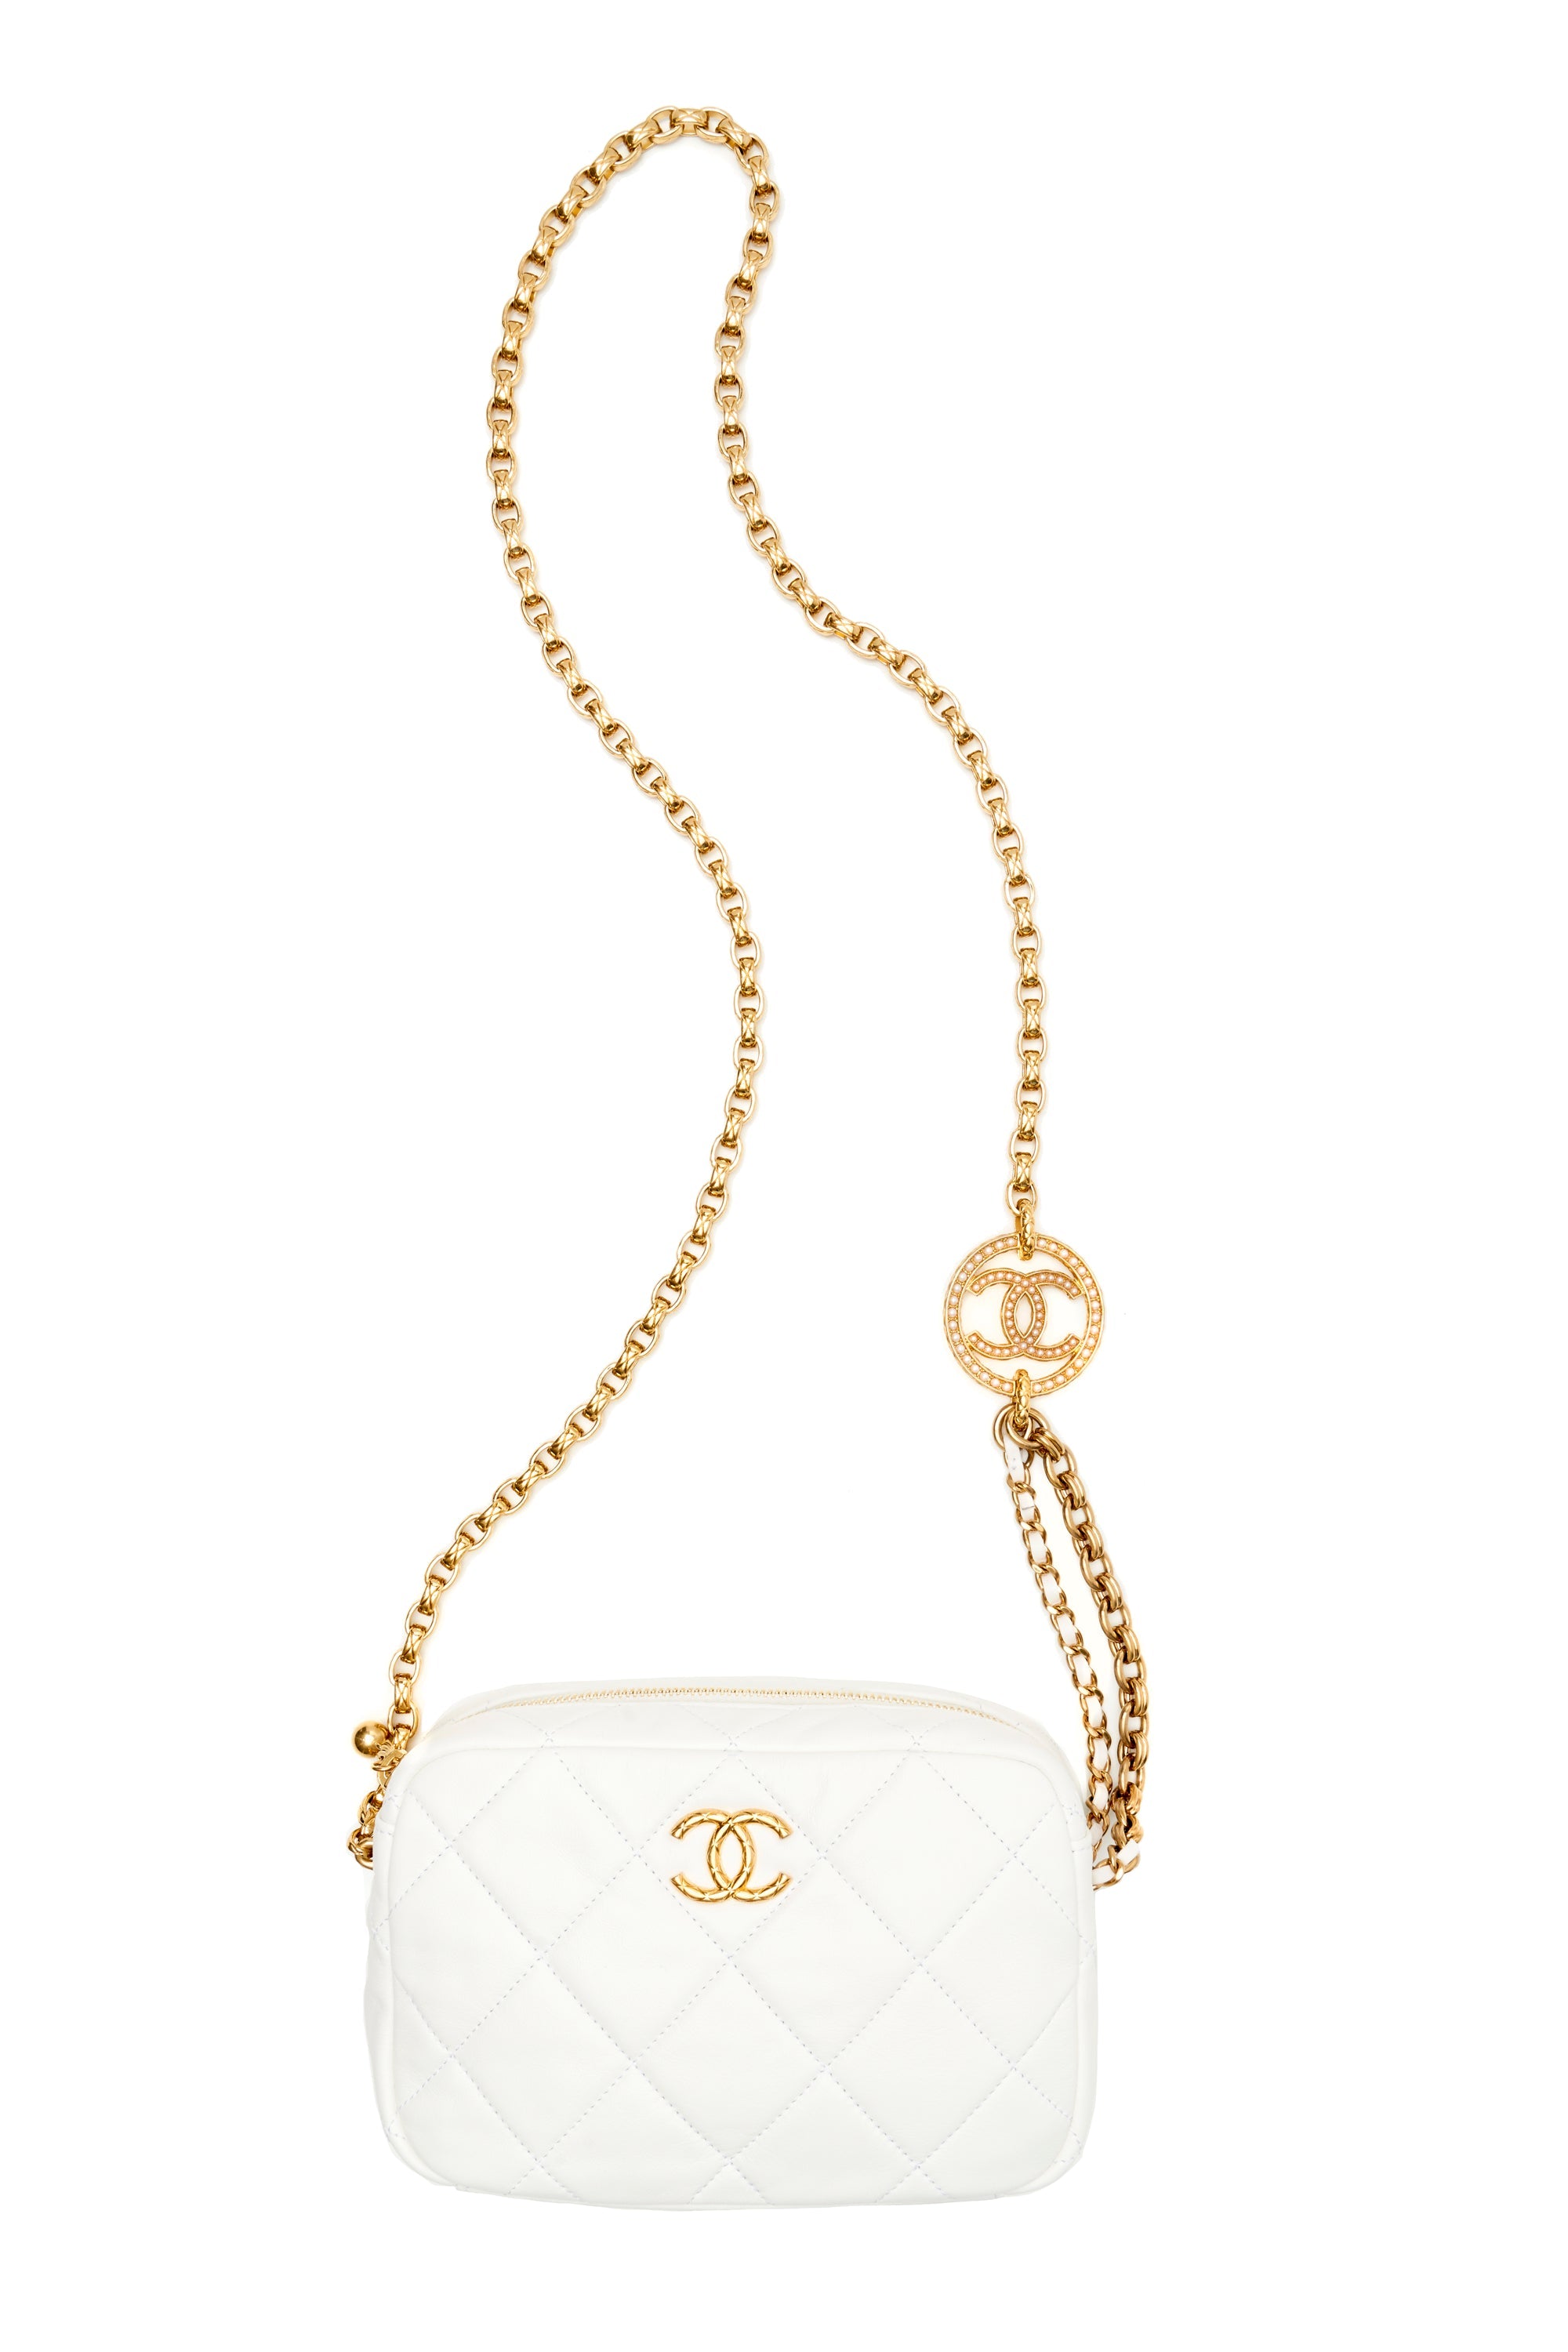 Chanel Small White Camera Bag 2022 - Foxy Couture Carmel